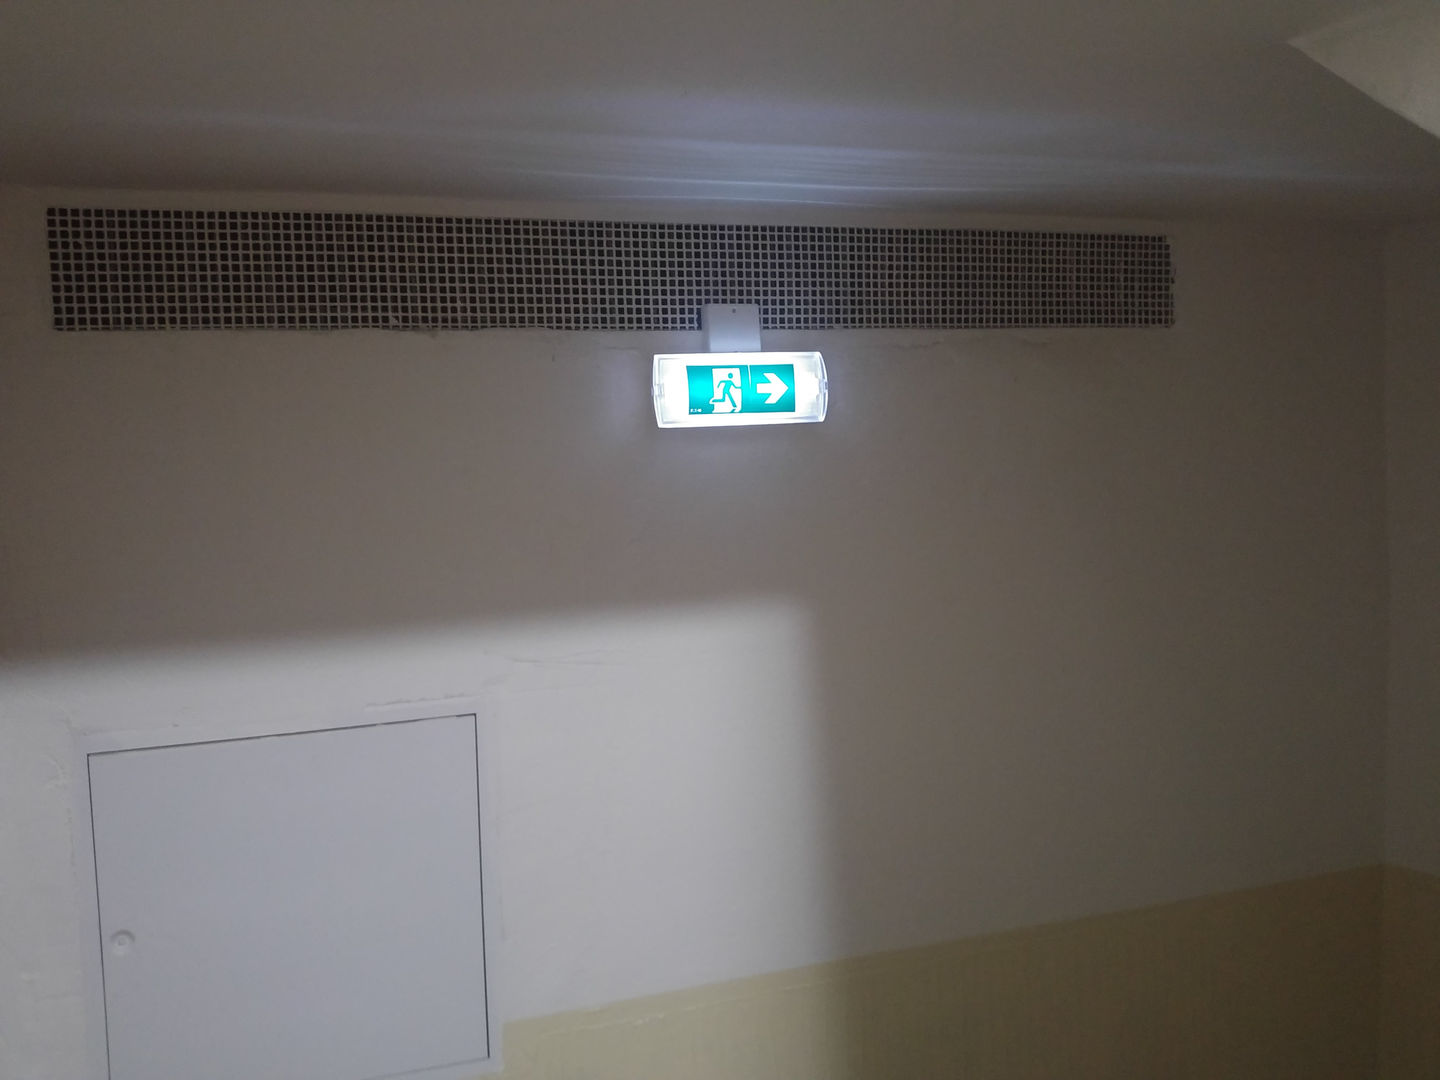 V bytovom dome nemajú denné svetlo, preto orientačné osvetlenie schodiska je viac ako potrebné